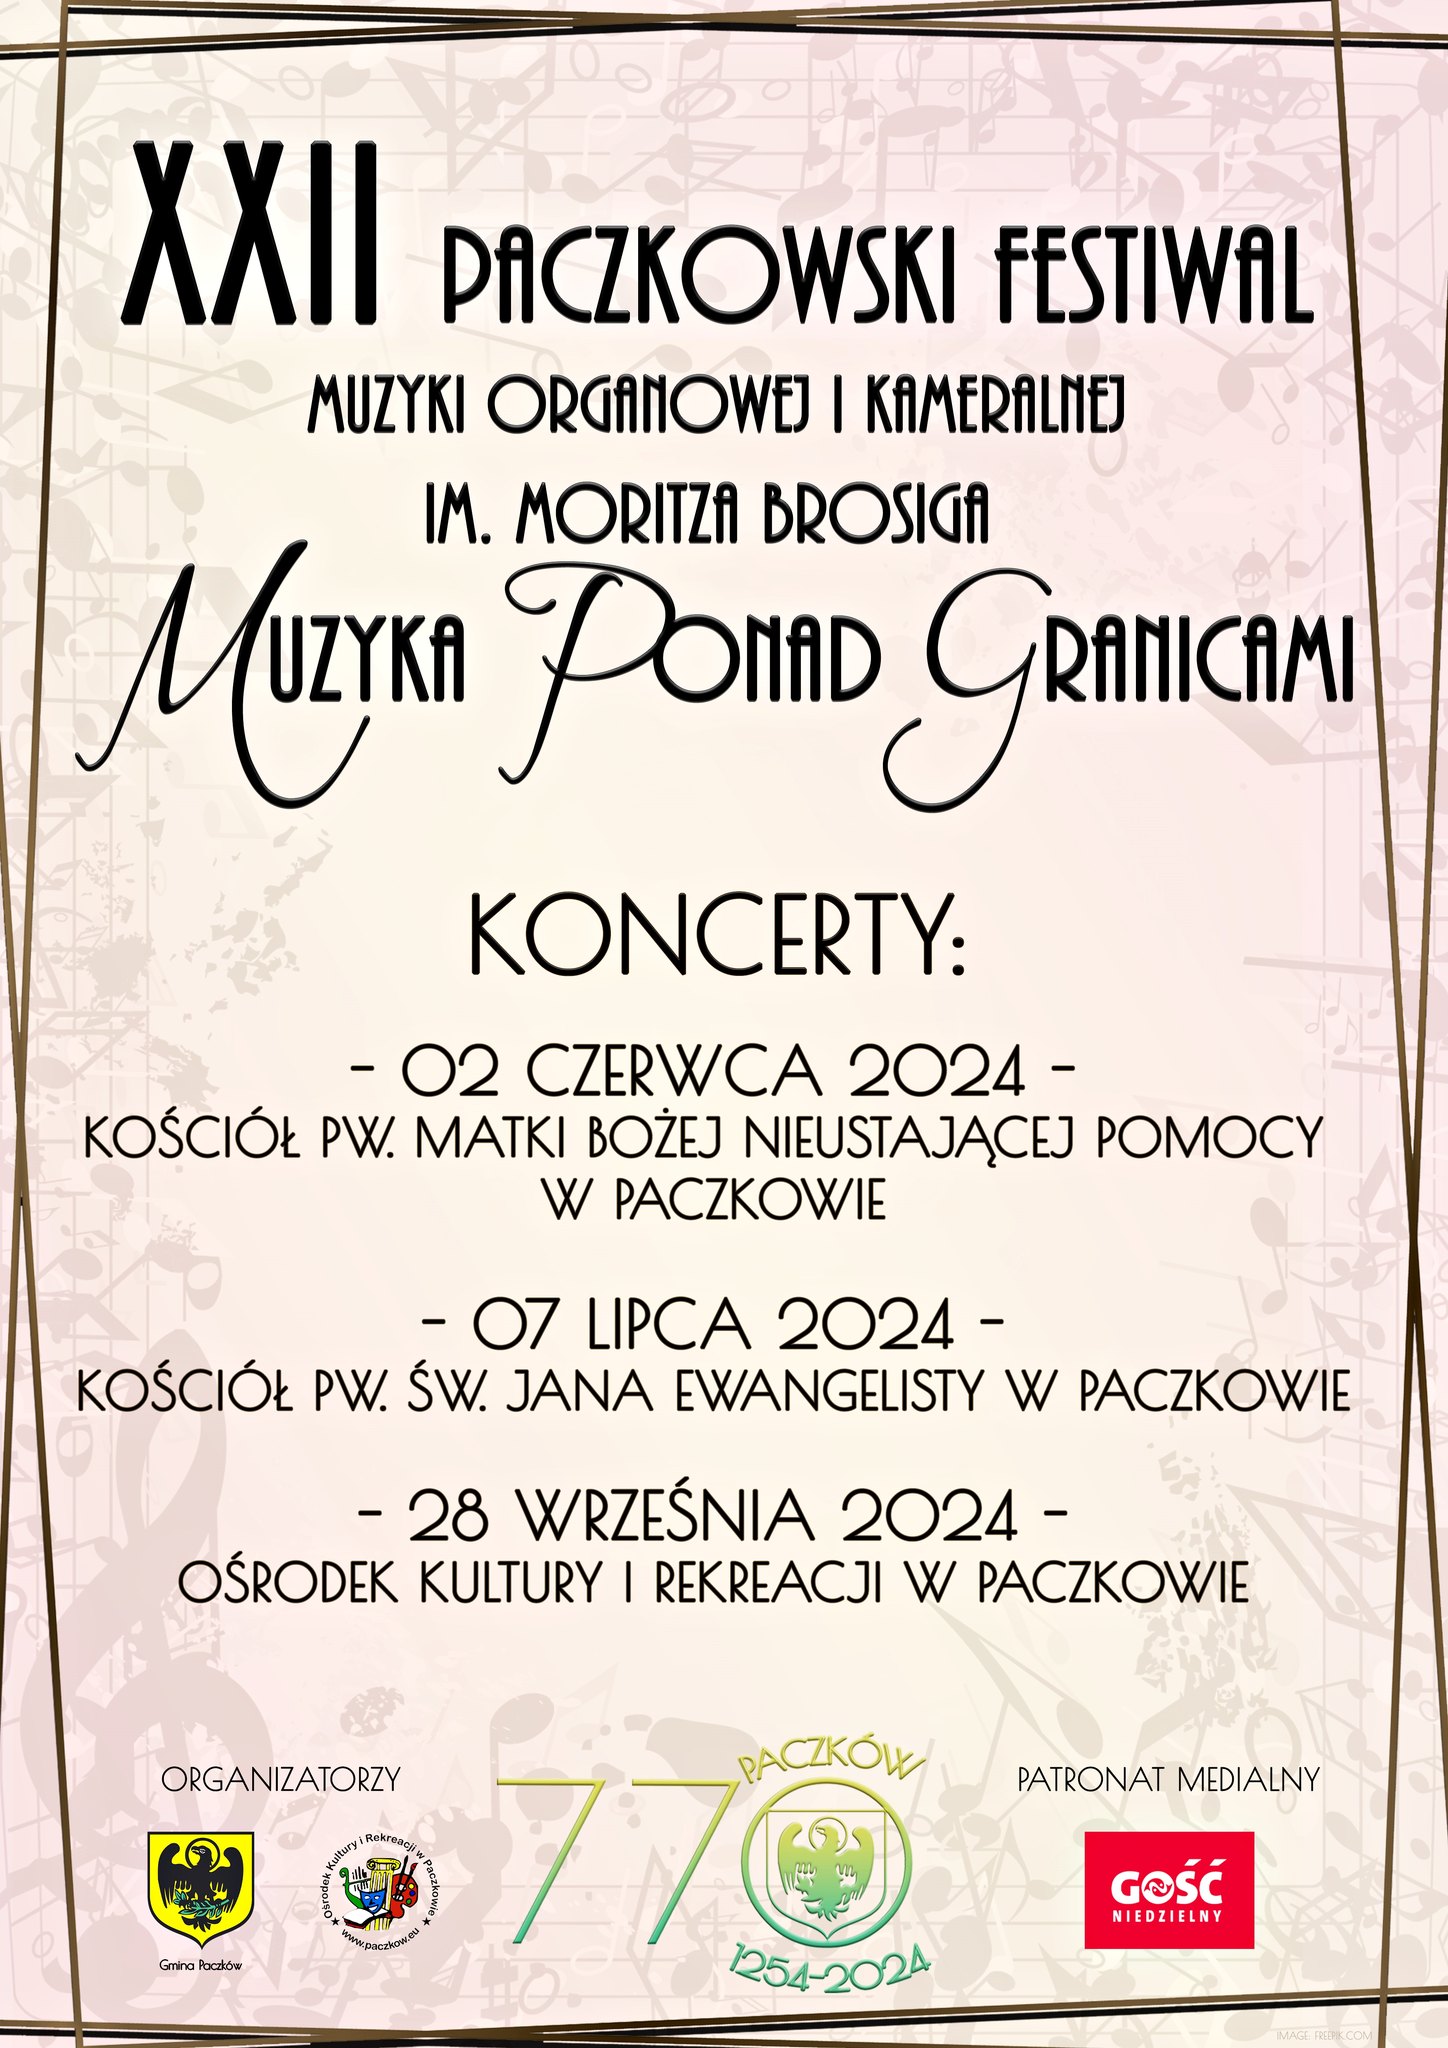 XXII Paczkowski Festiwal Muzyki Organowej i Kameralnej Muzyka Ponad Organami